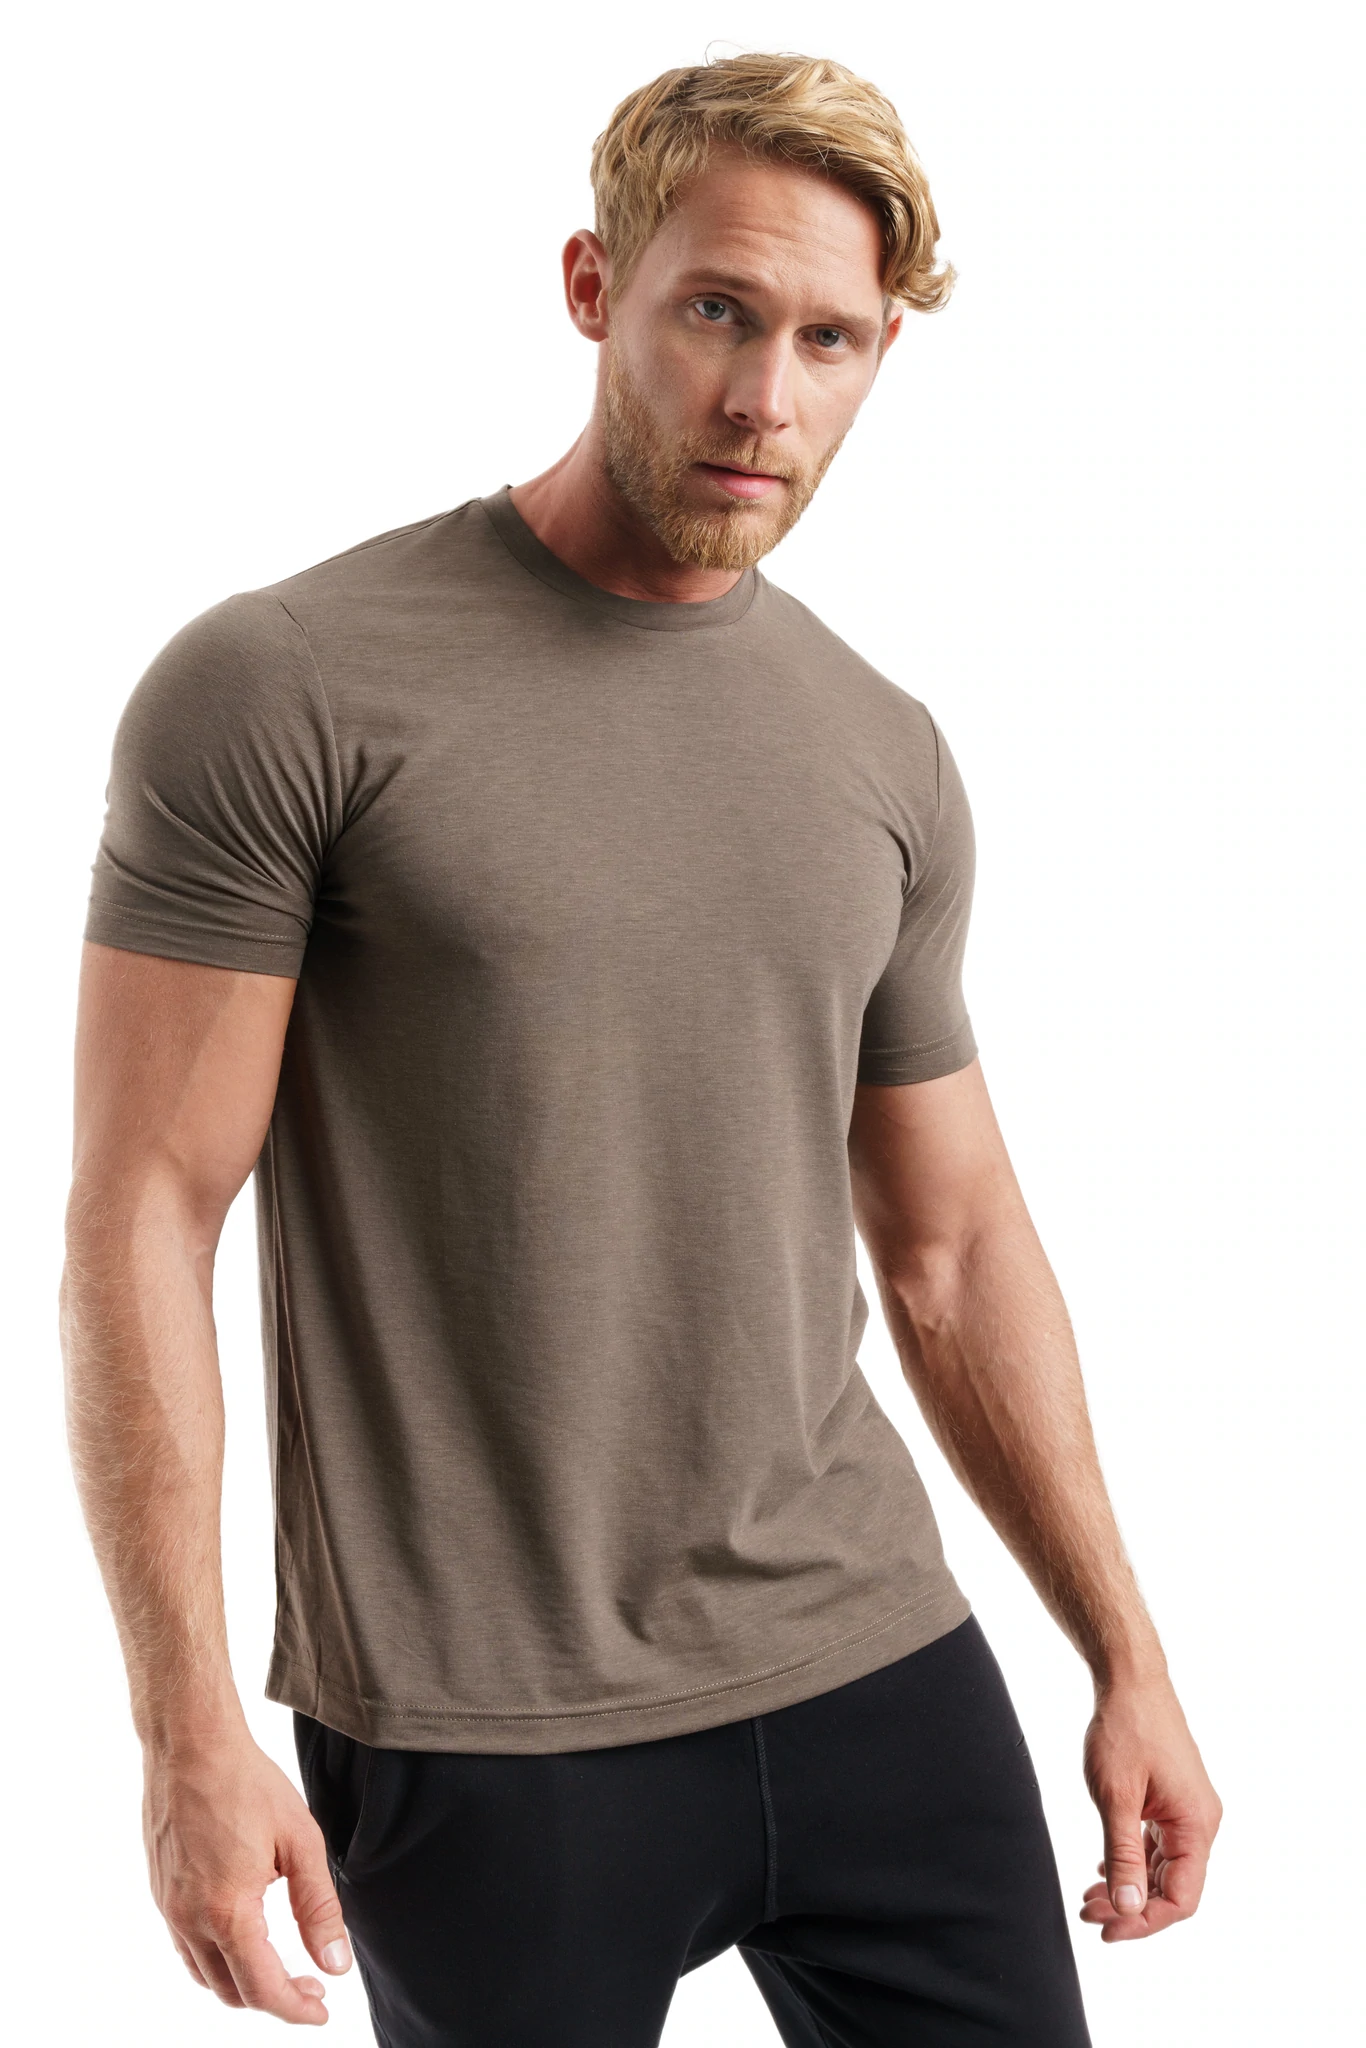 Turtle Green Merino Wool T-Shirt Mens - 100% Organic Merino Wool Undershirt Lightweight Base Layer